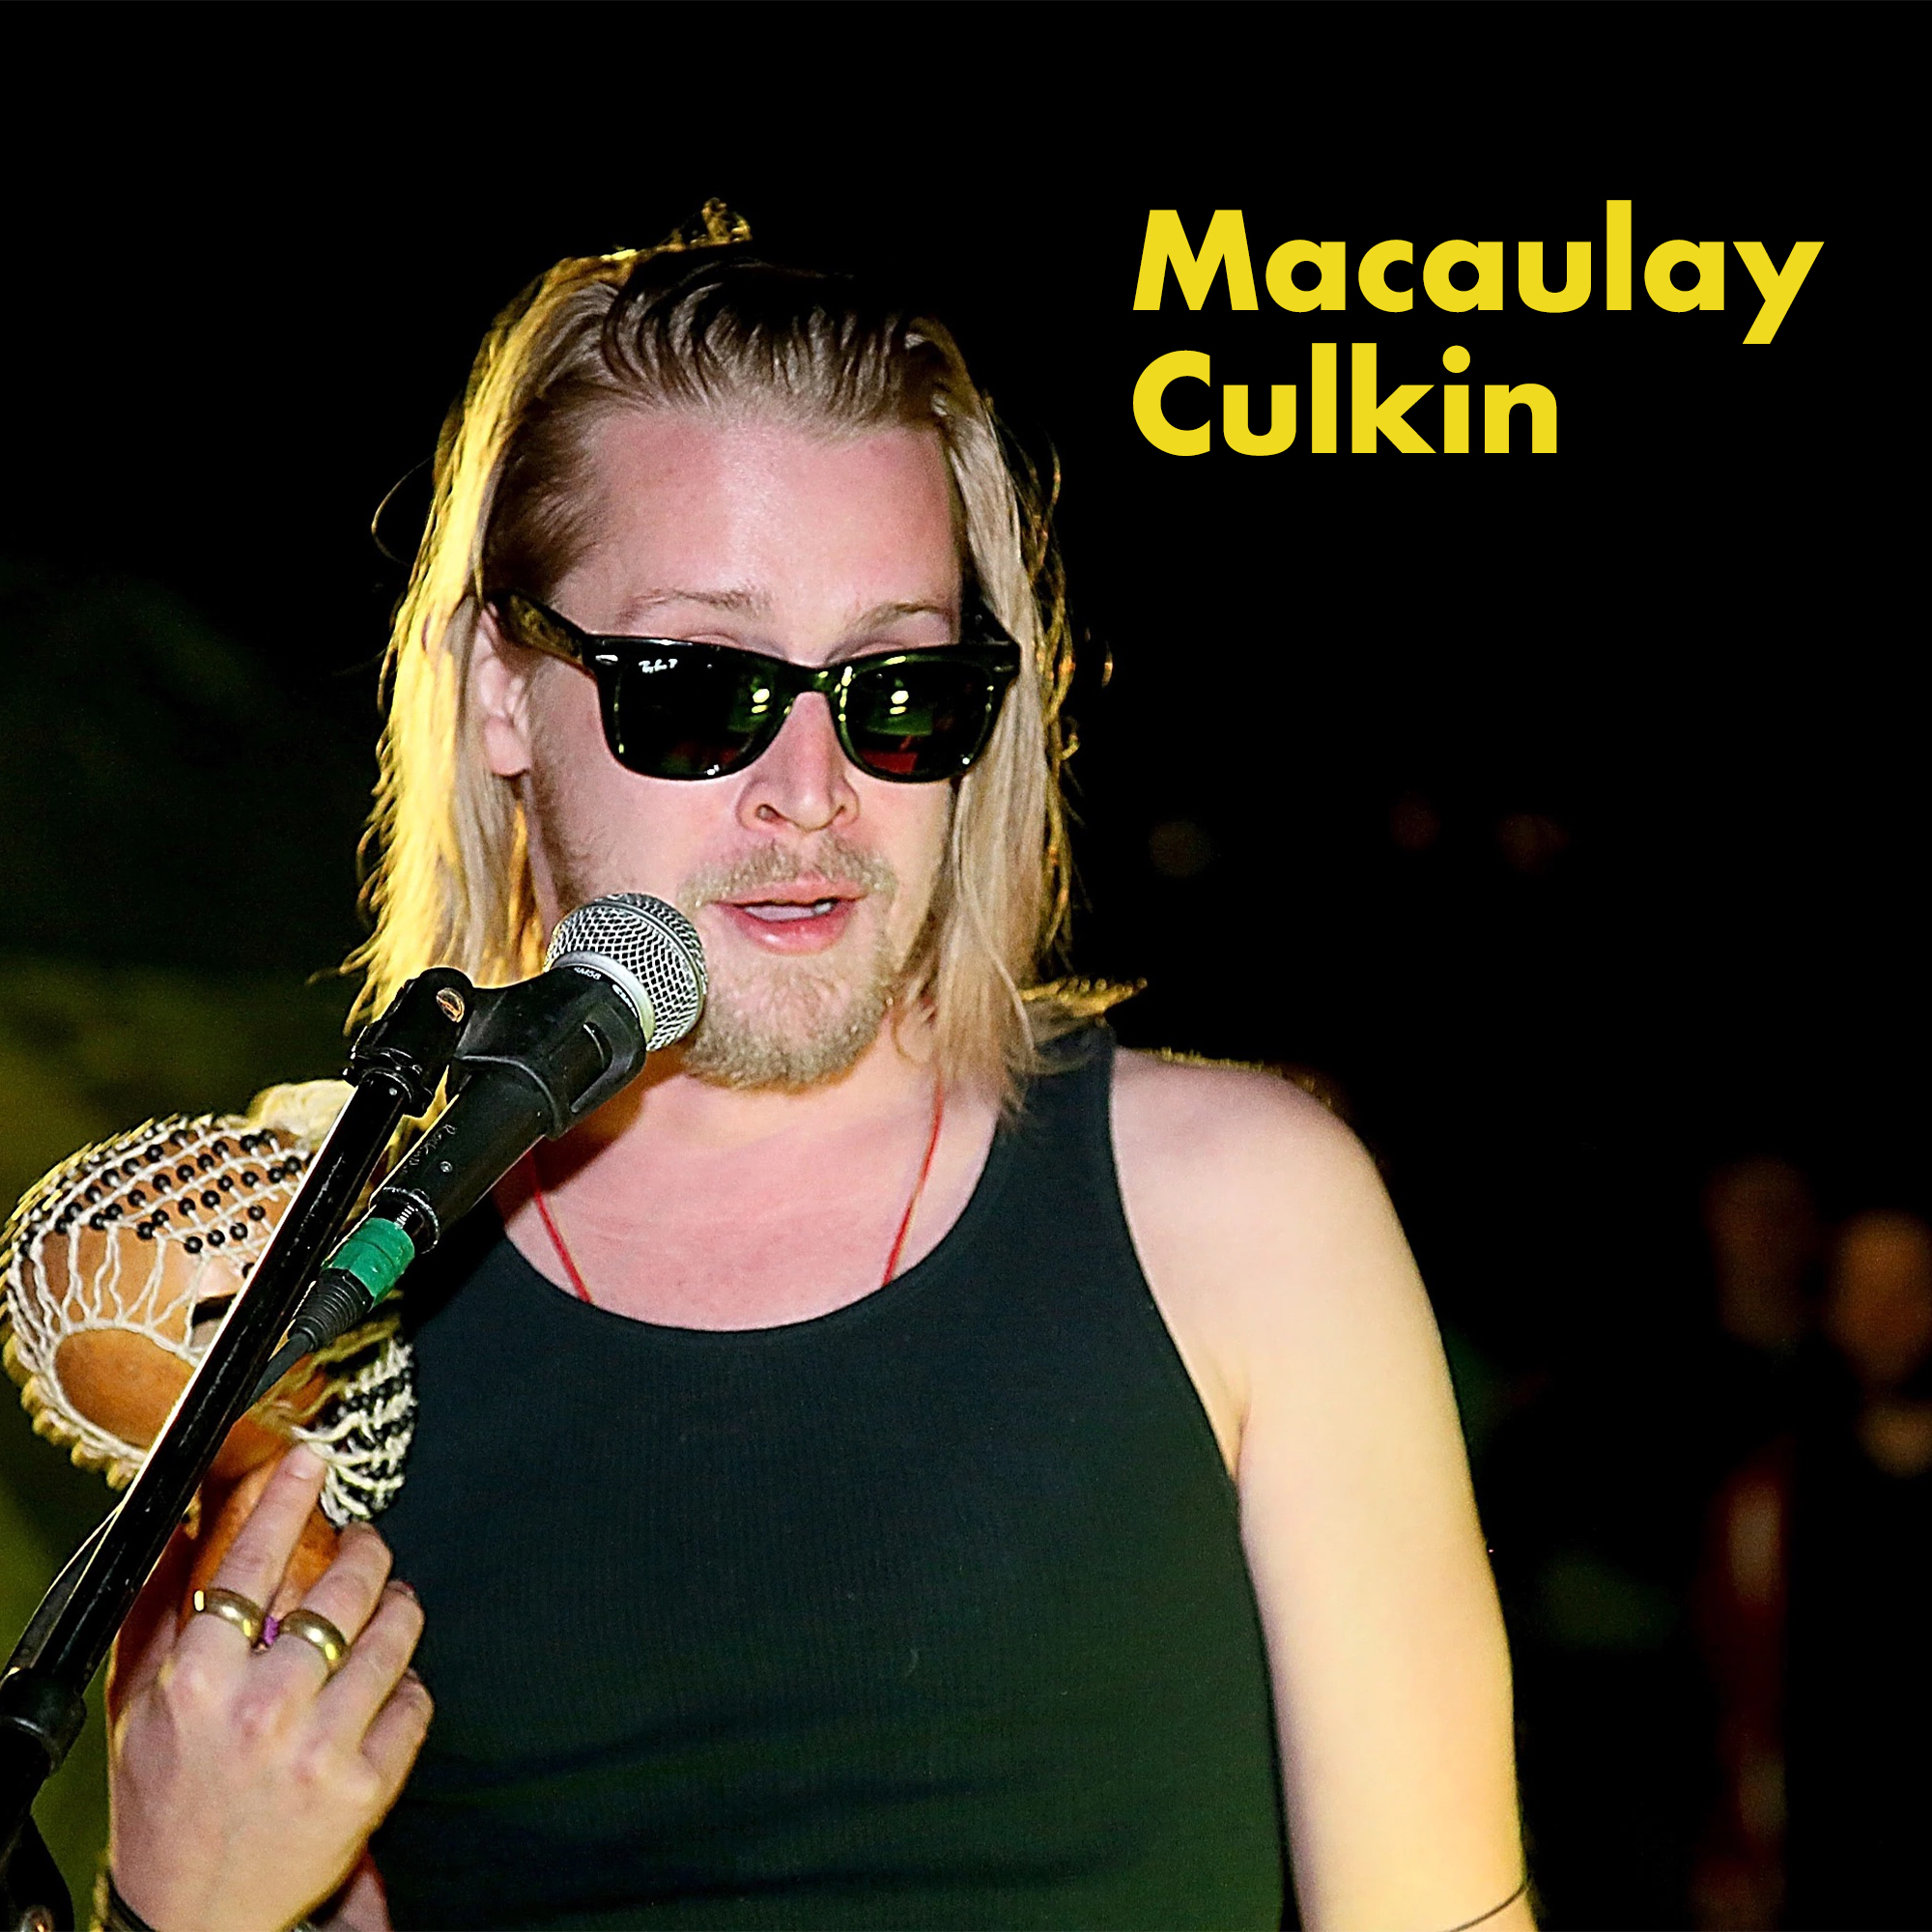 actors in bands - men in uniform - Macaulay Culkin